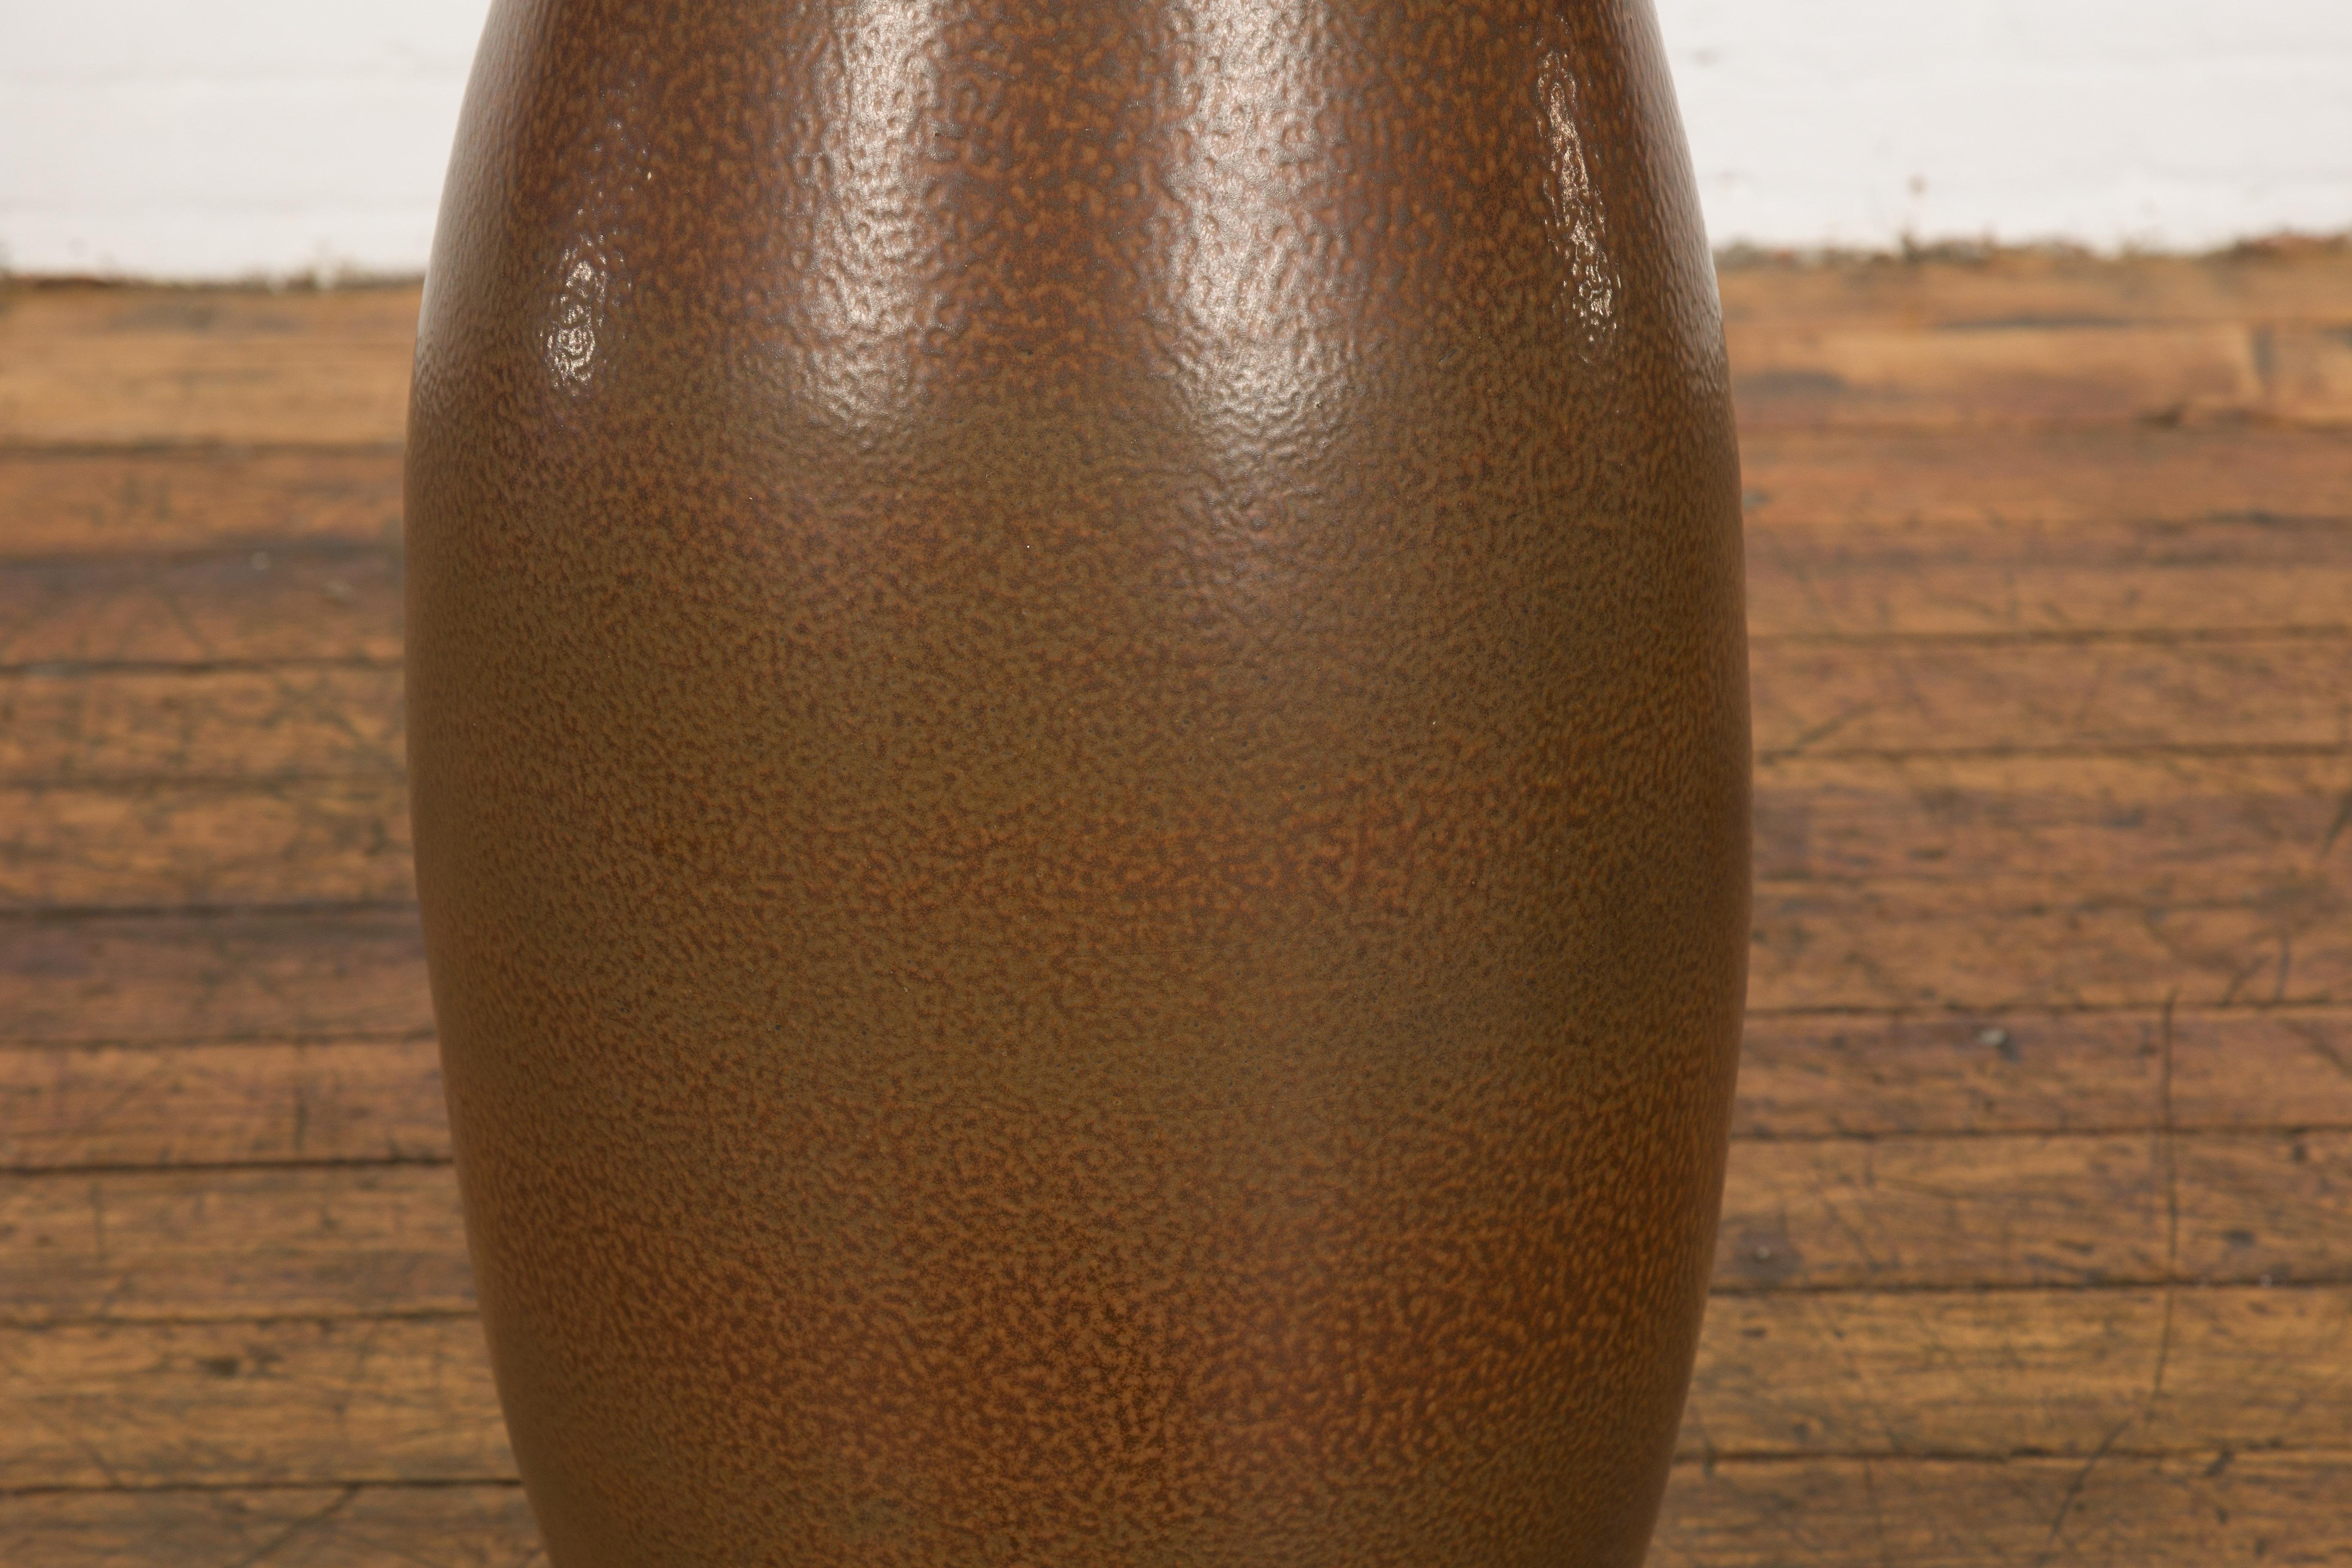 Large Brown Glazed Ceramic Vase with Mottled Finish For Sale 2